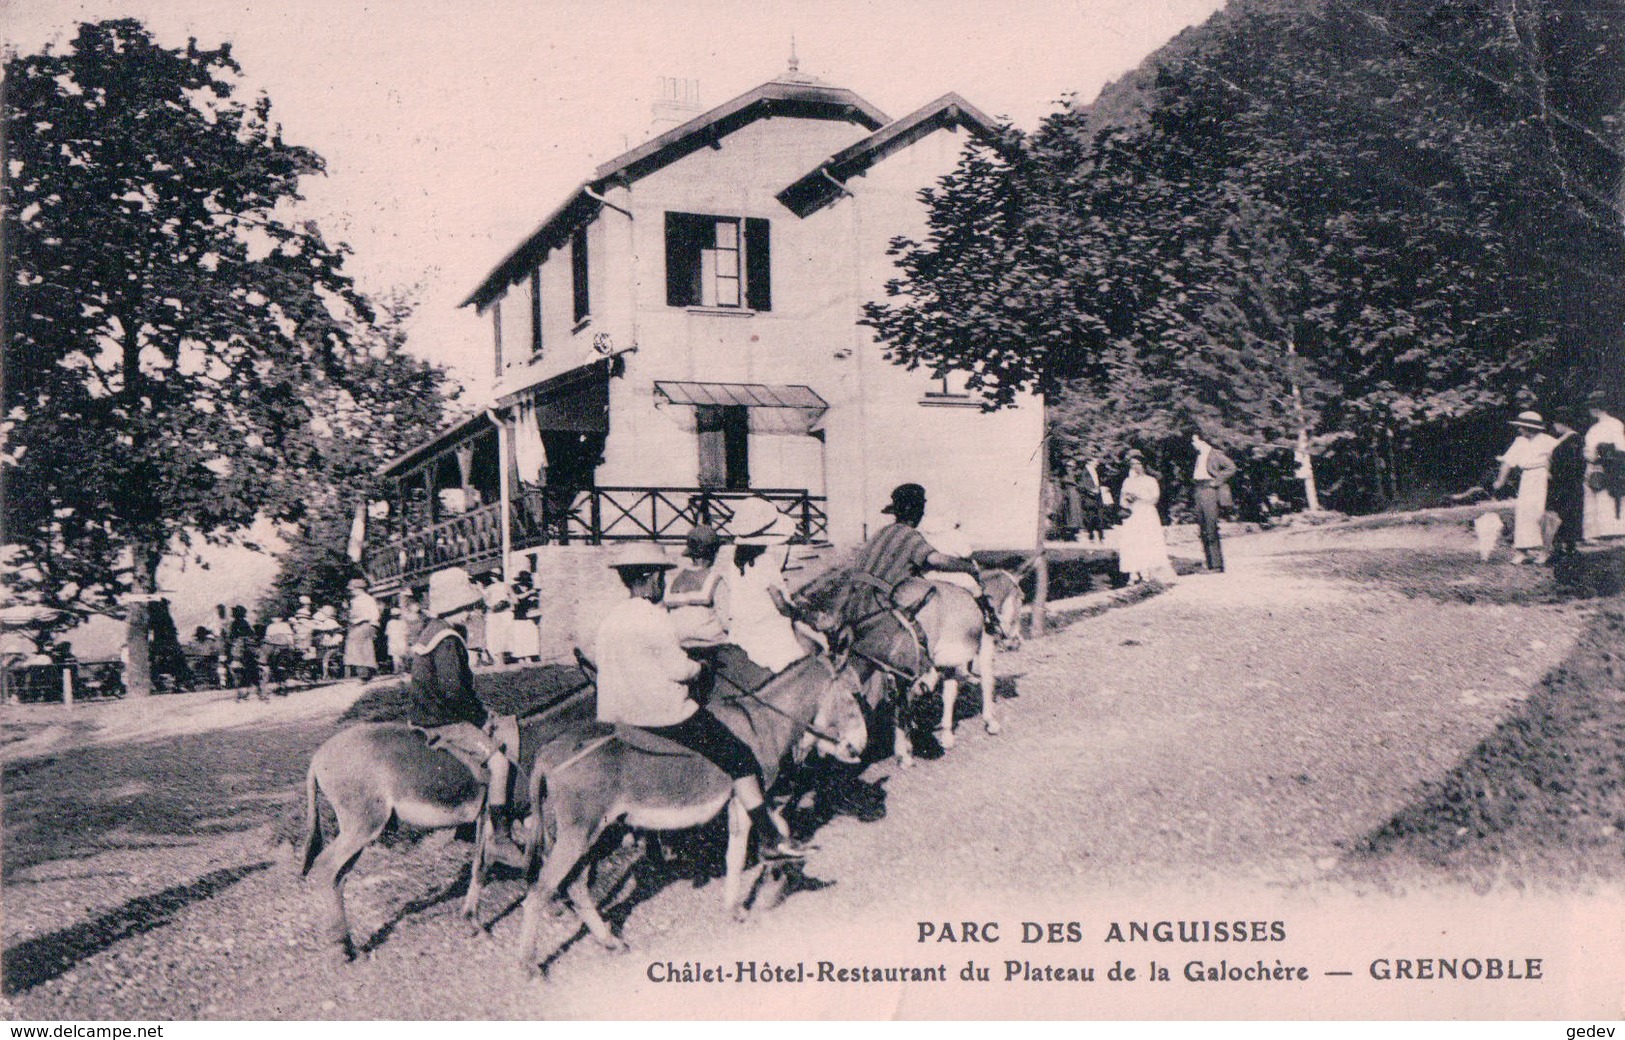 France 38, Parc Des Anguisses, Hôtel De La Galochère, Transport à Dos D'Ânes + Timbres Taxe Suisse 20ct (15.7.24) Plis - Grenoble